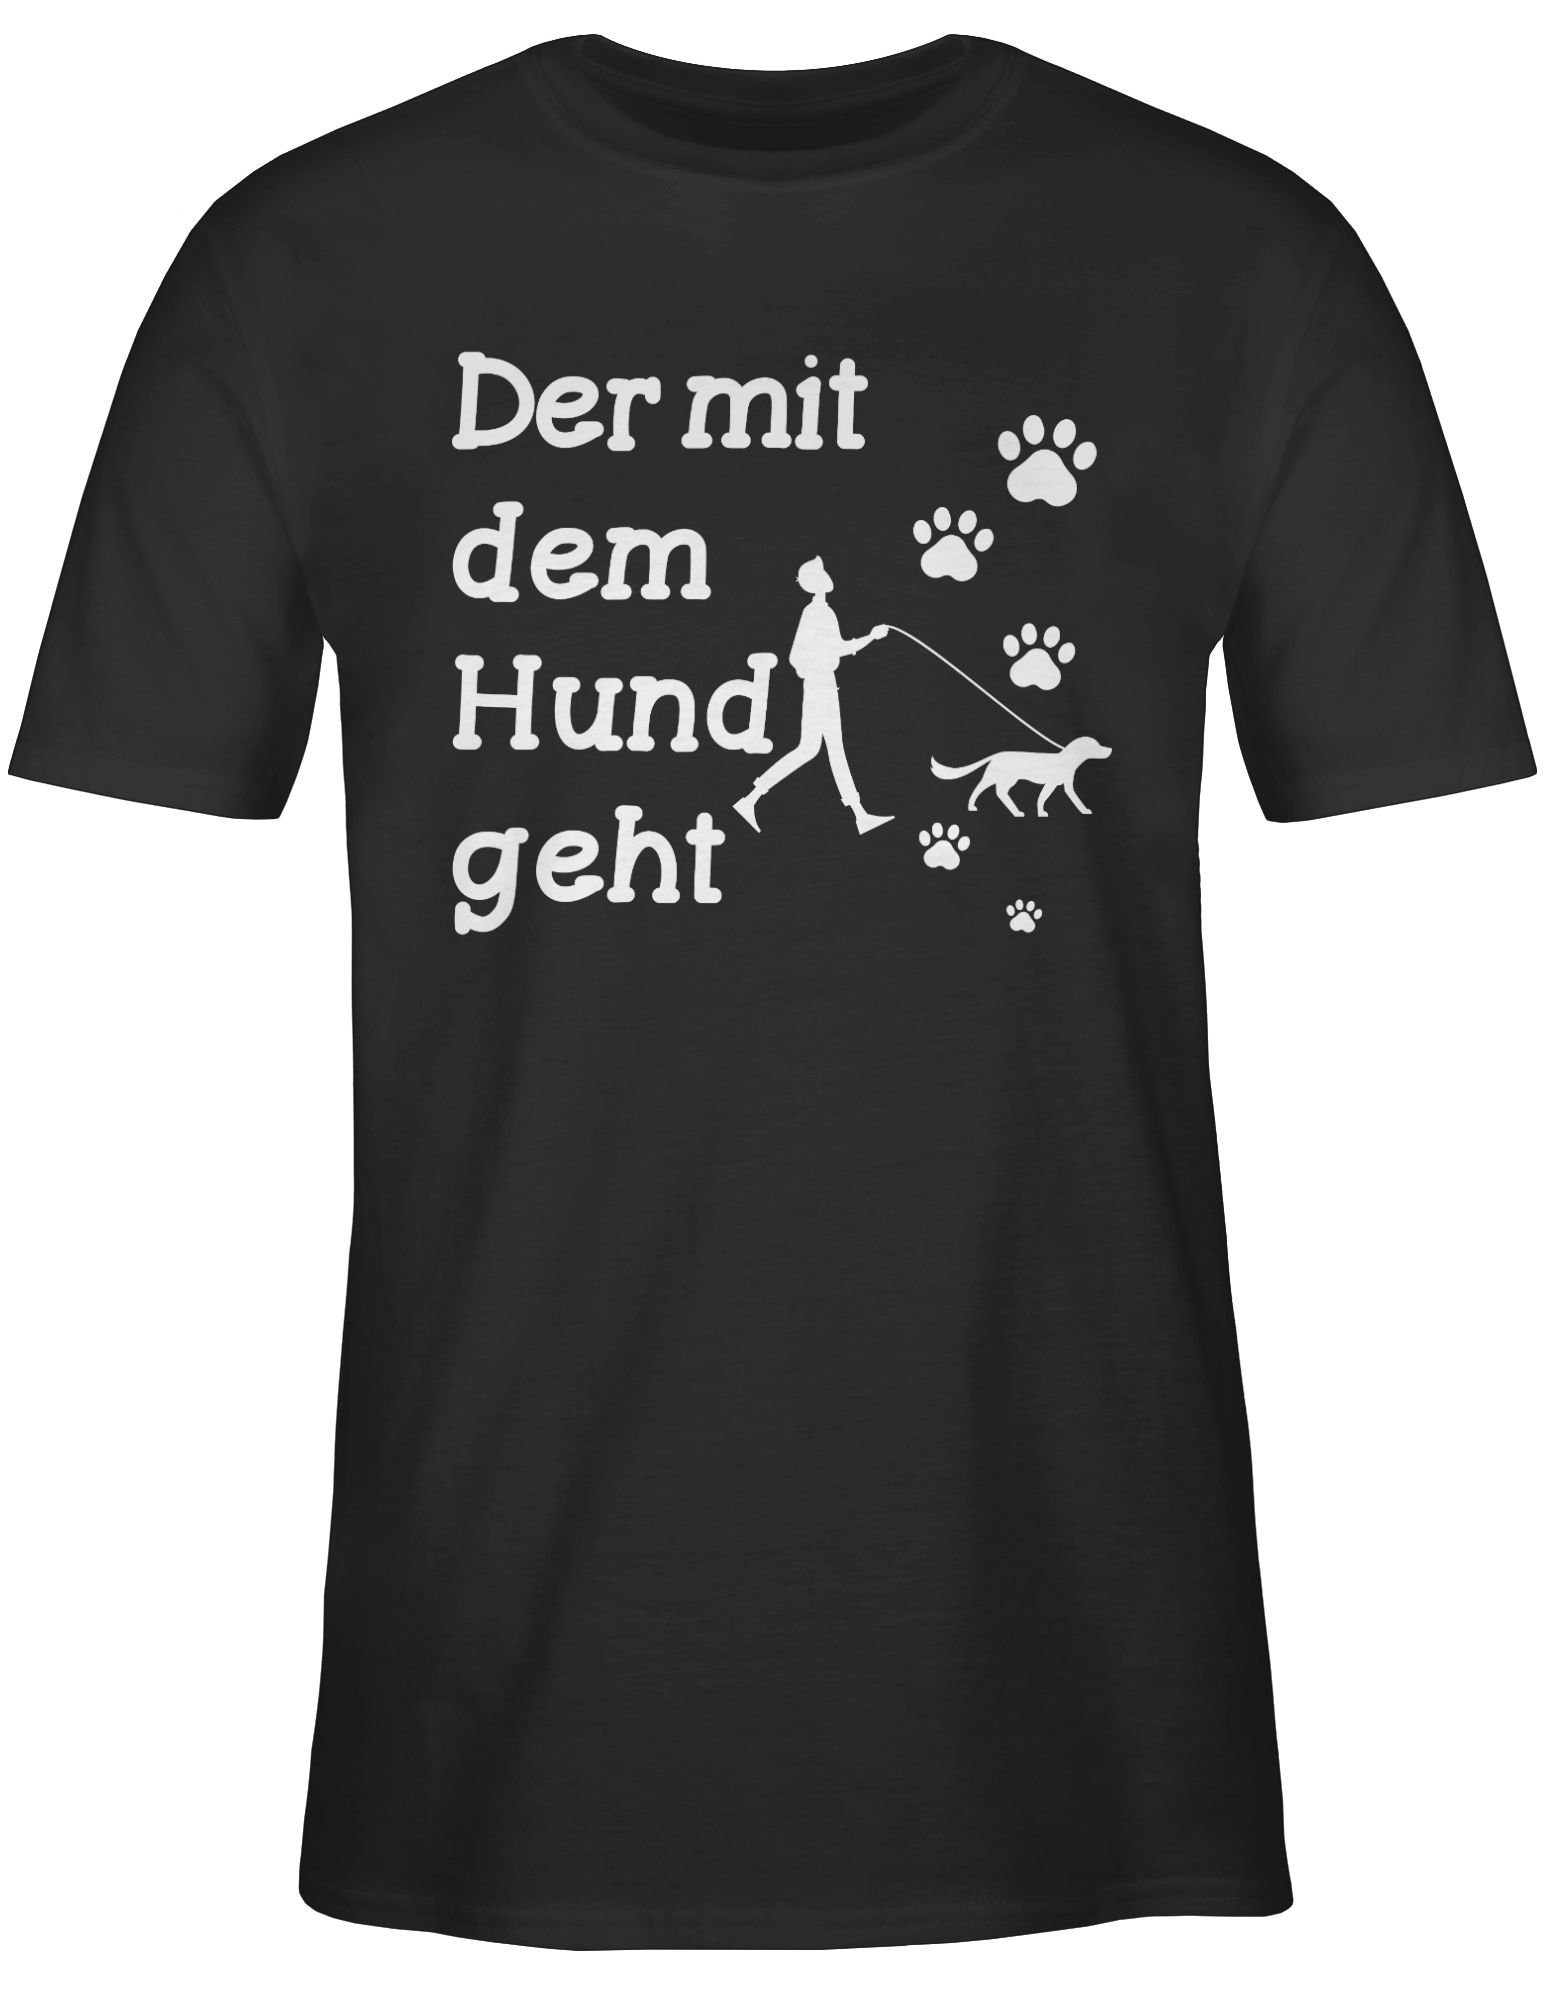 Der Pfoten Statement 01 T-Shirt dem weiß mit Shirtracer mit Schwarz Sprüche Hund Spruch geht